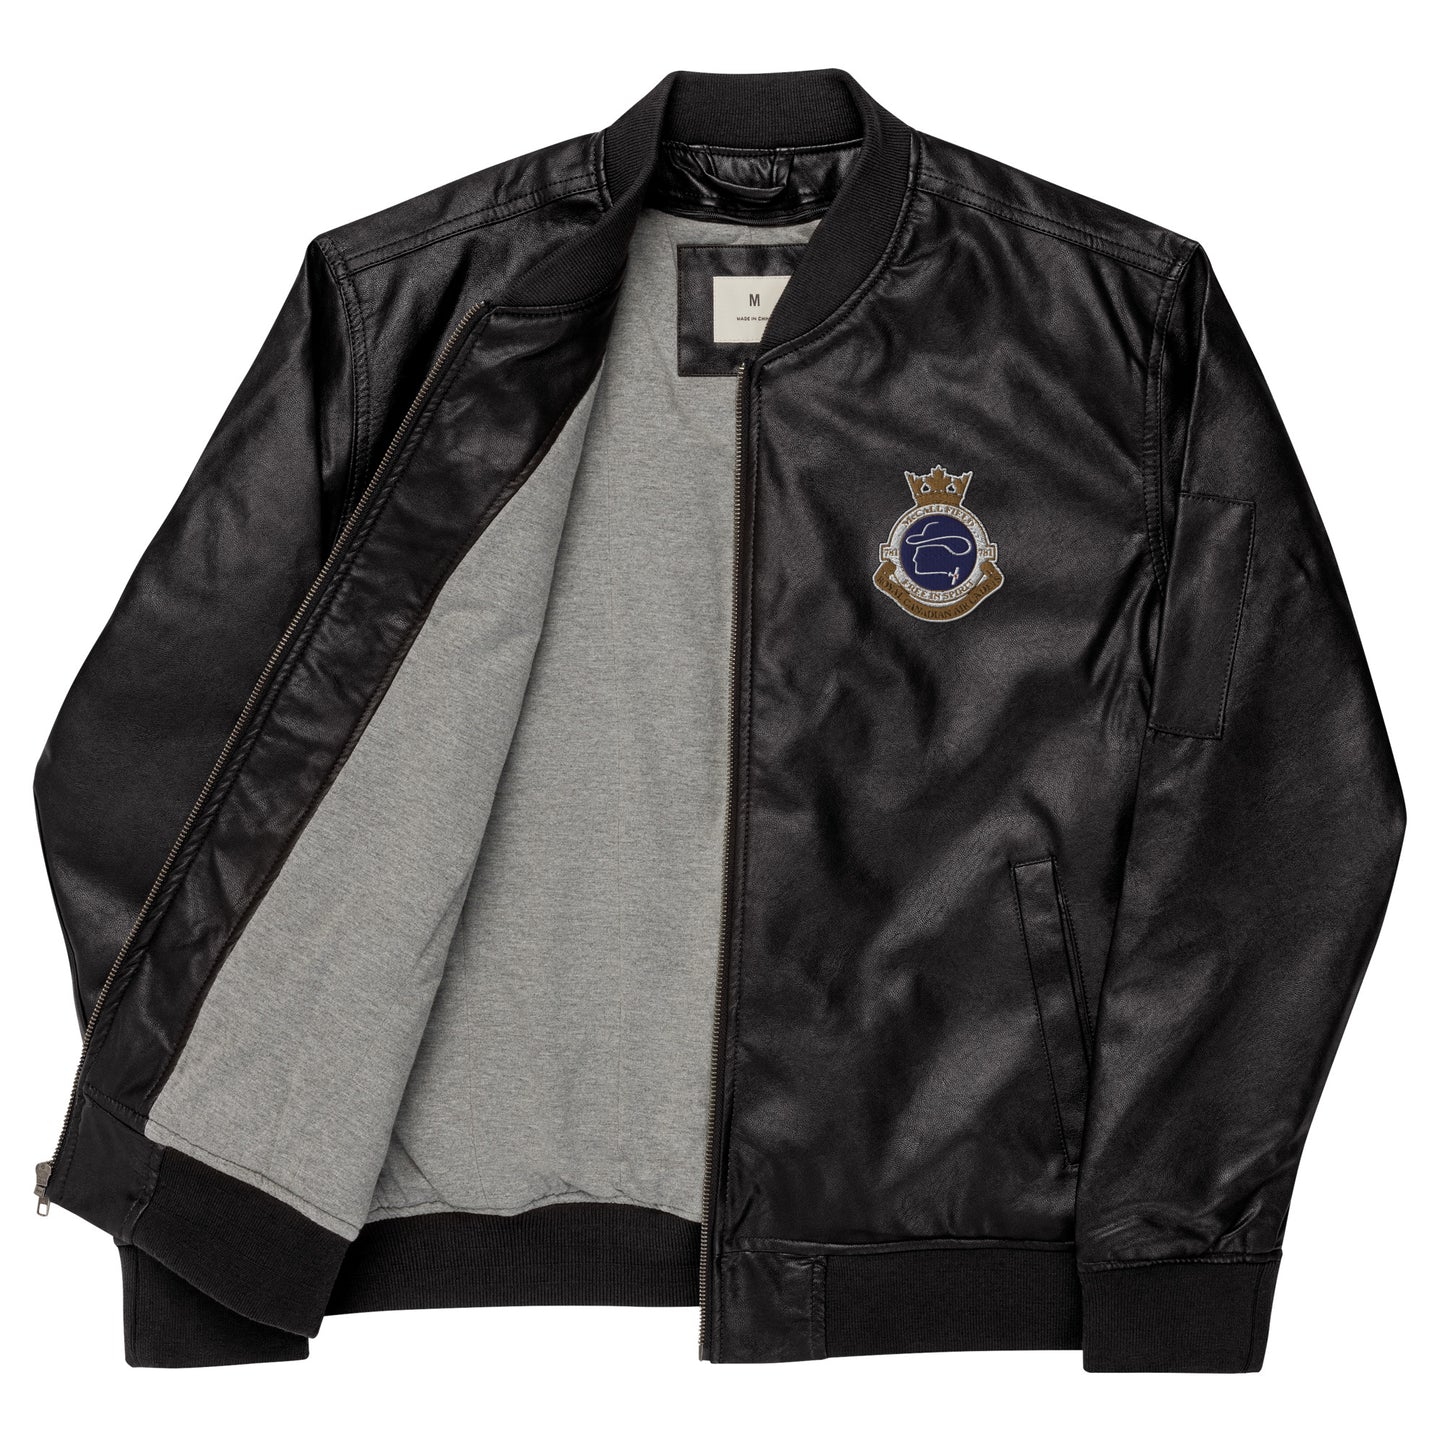 Sabre Leather Bomber Jacket